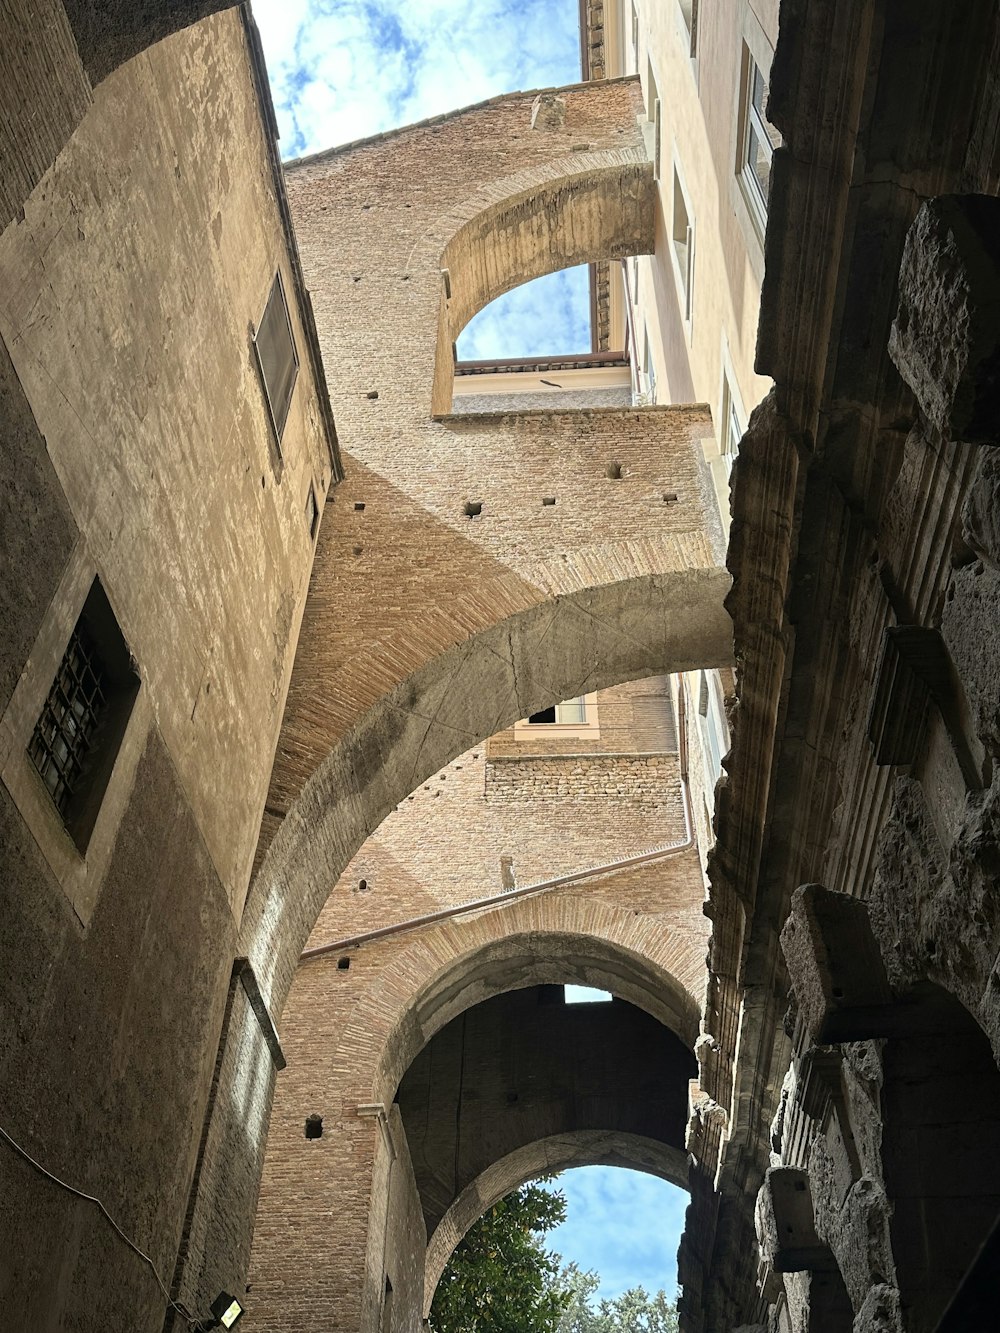 Un callejón estrecho con arcos y una torre del reloj al fondo